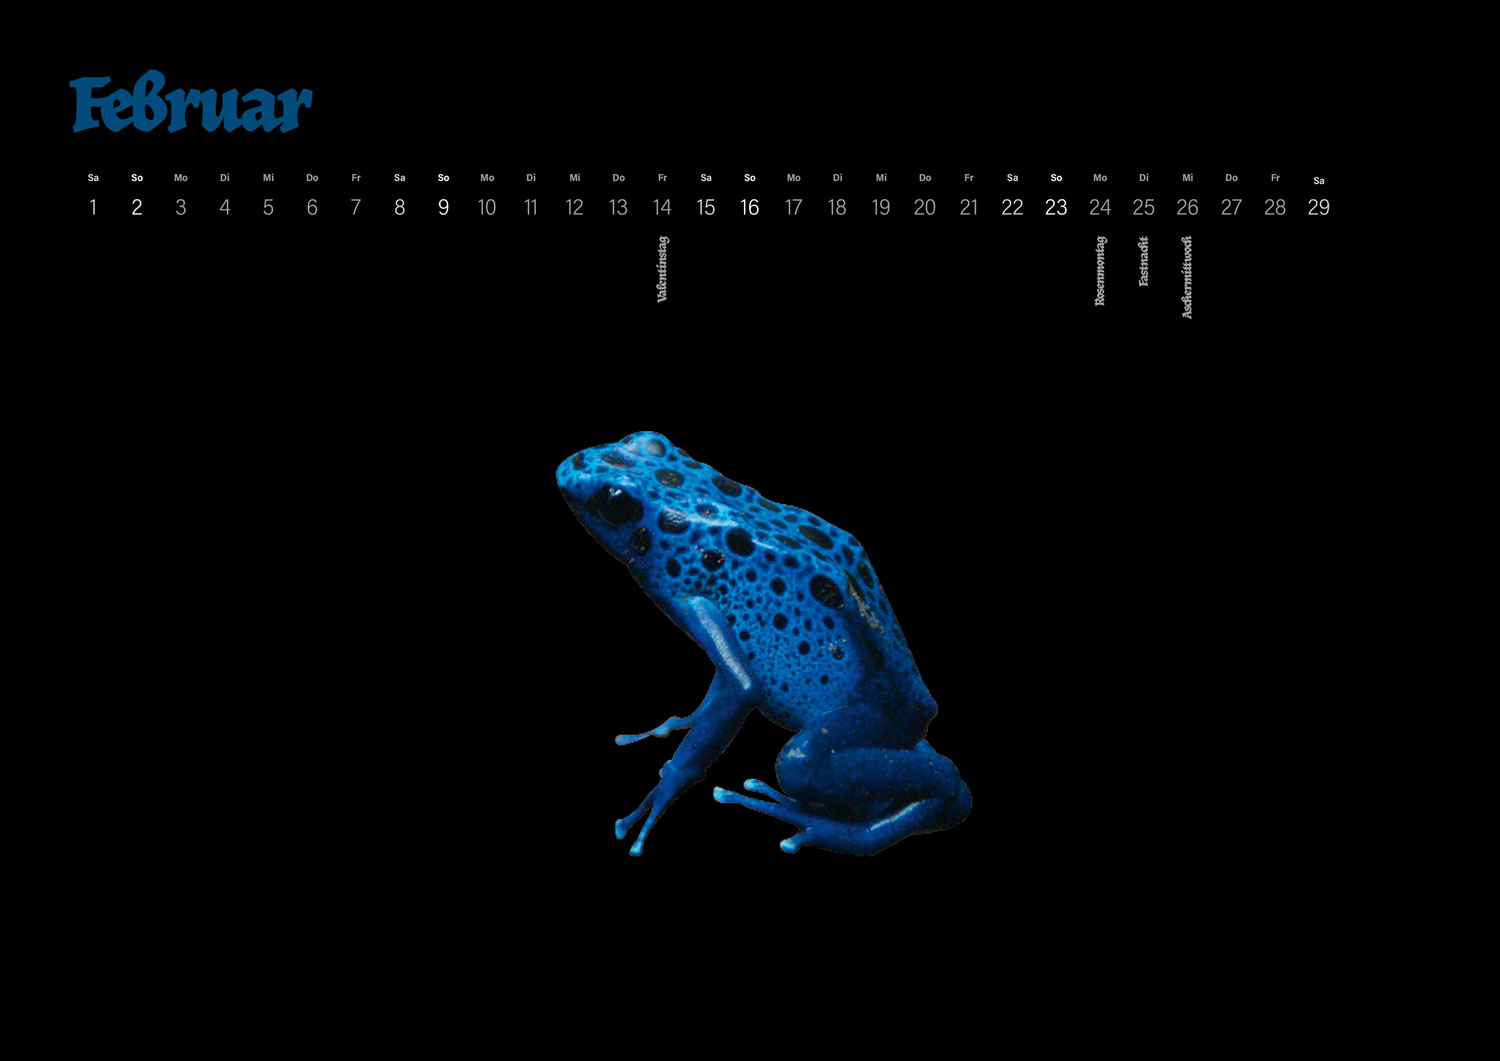 Calidario PANTONE calendar 2020 in February with a frog motif